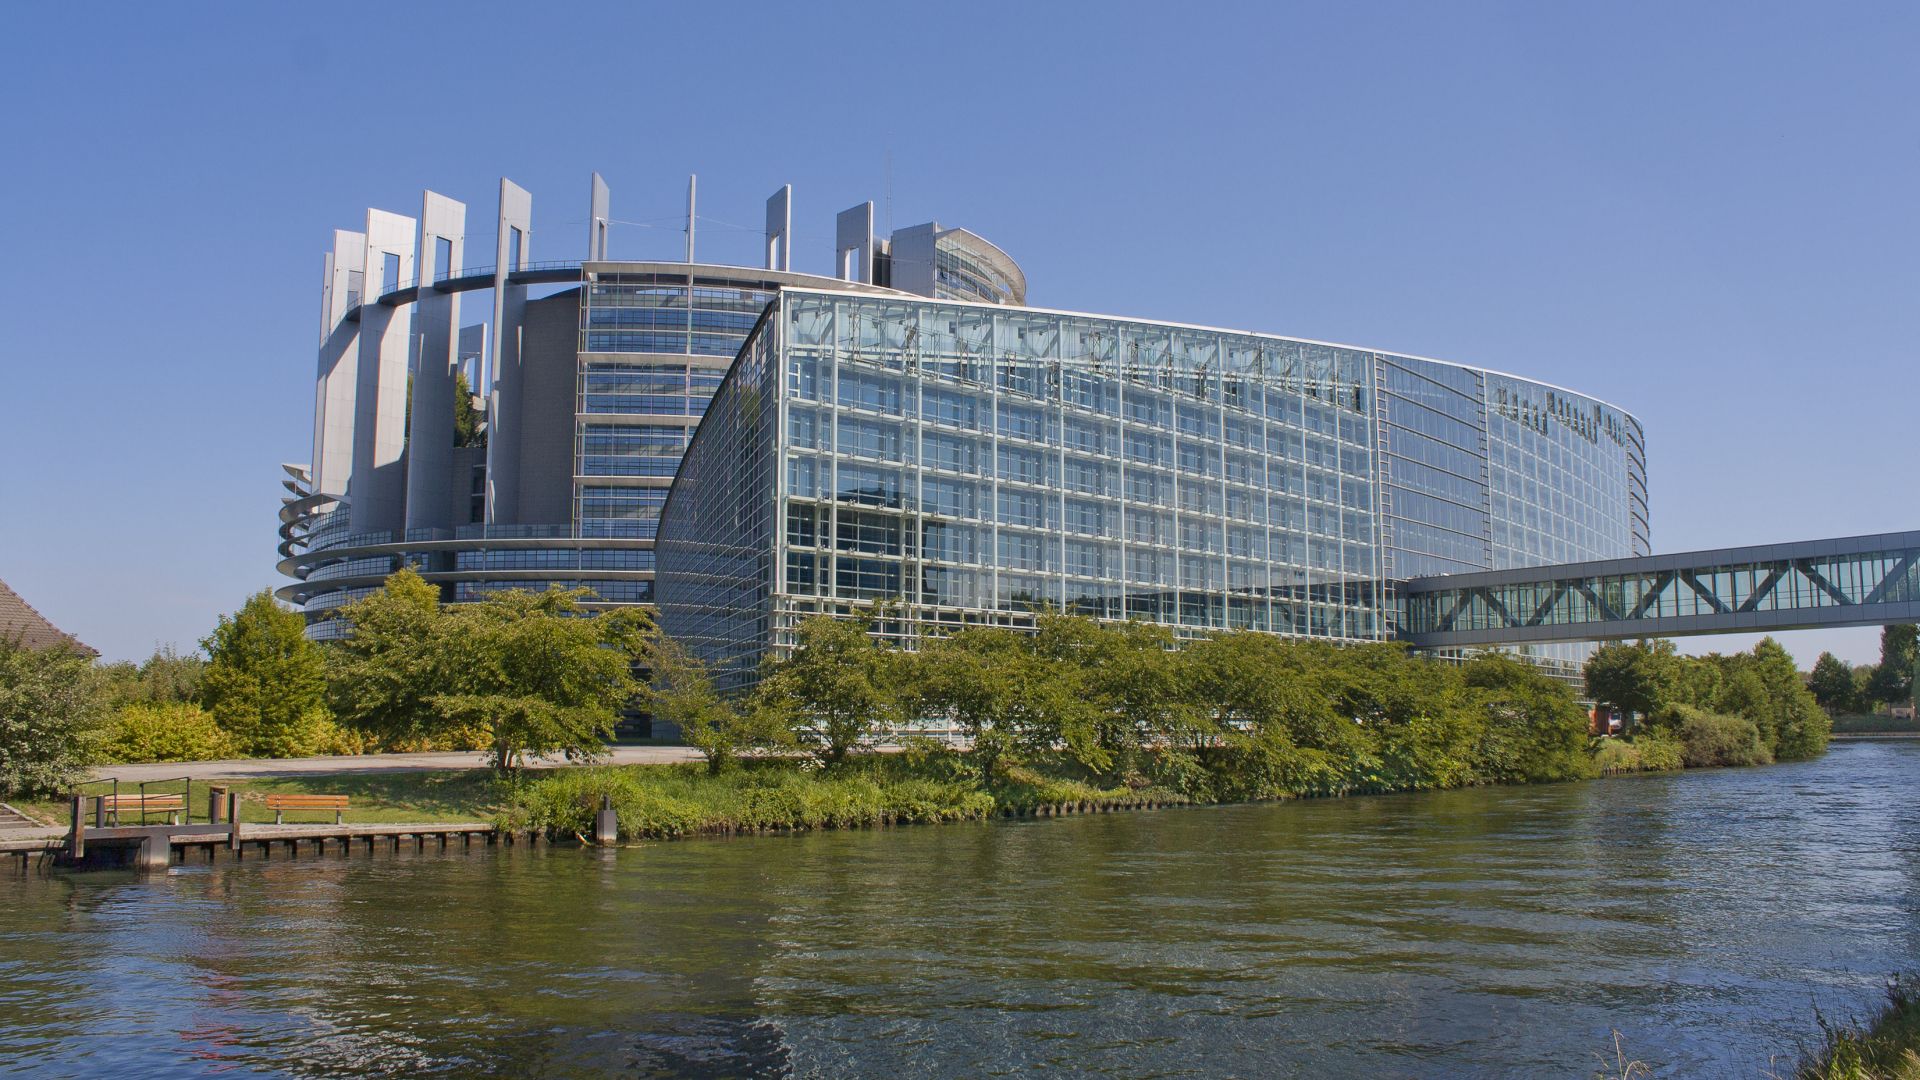 Strasbourg EU Parliament